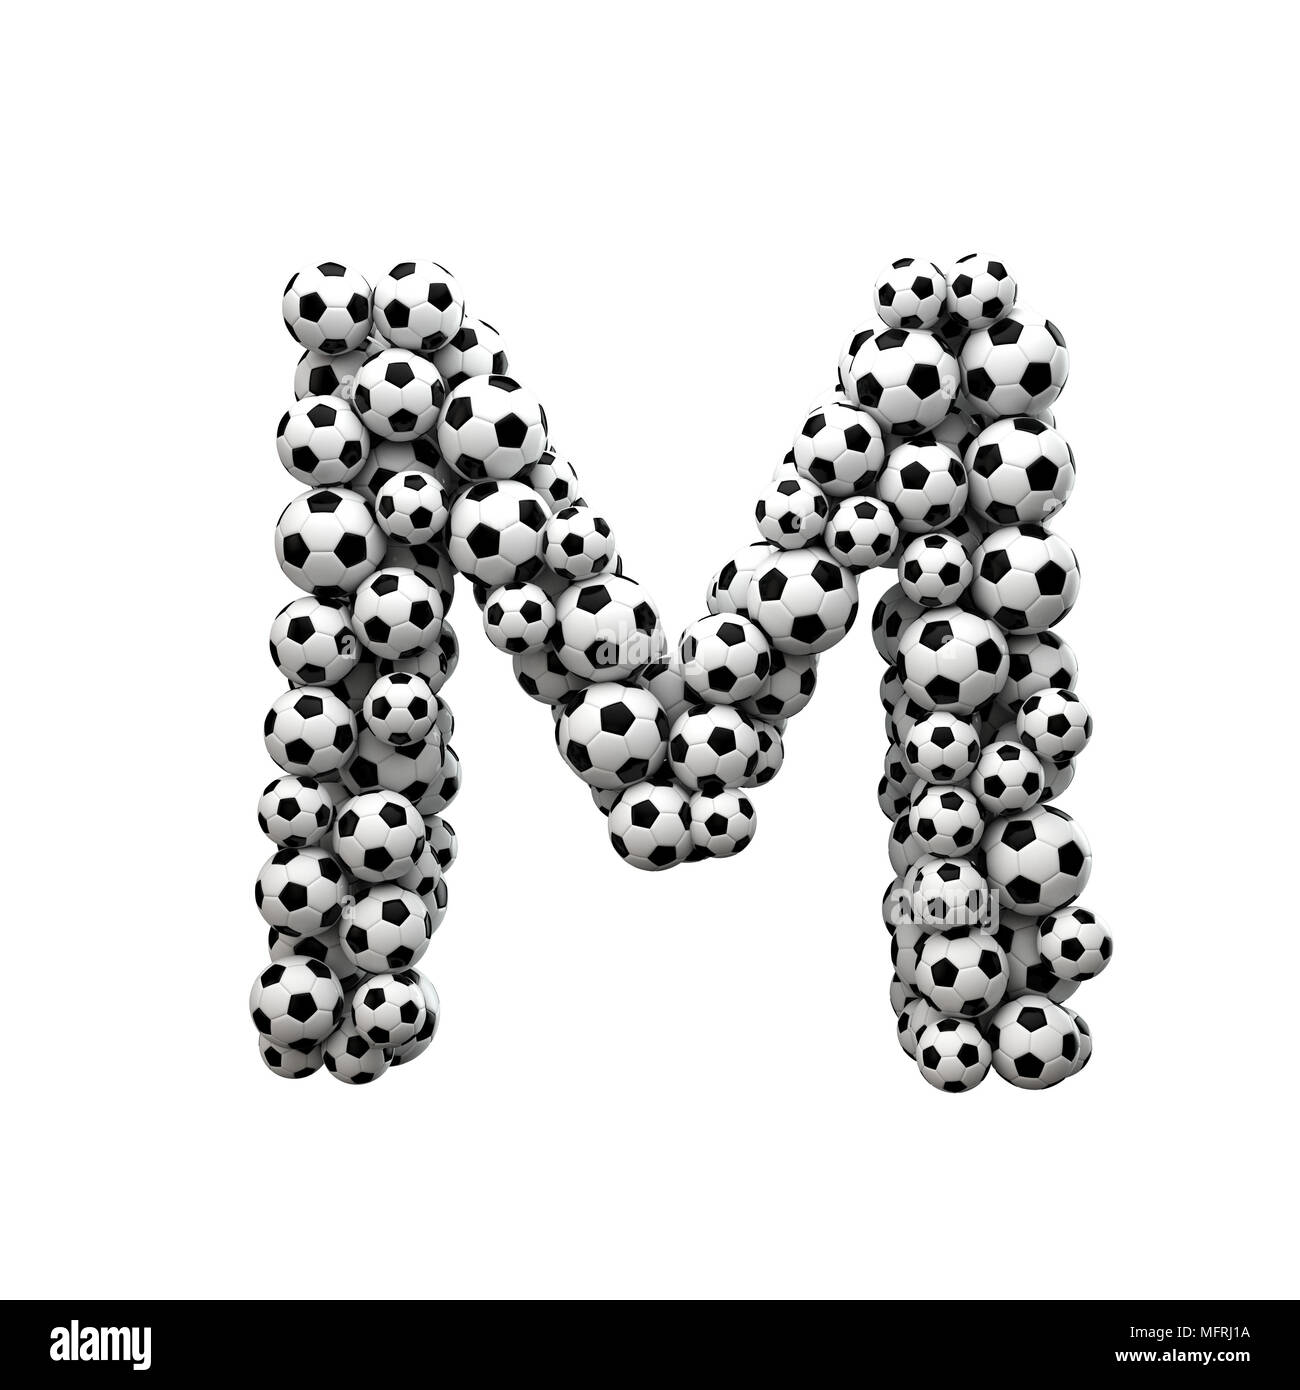 Letra mayúscula M font hechas a partir de una colección de balones de fútbol. 3D Rendering Foto de stock